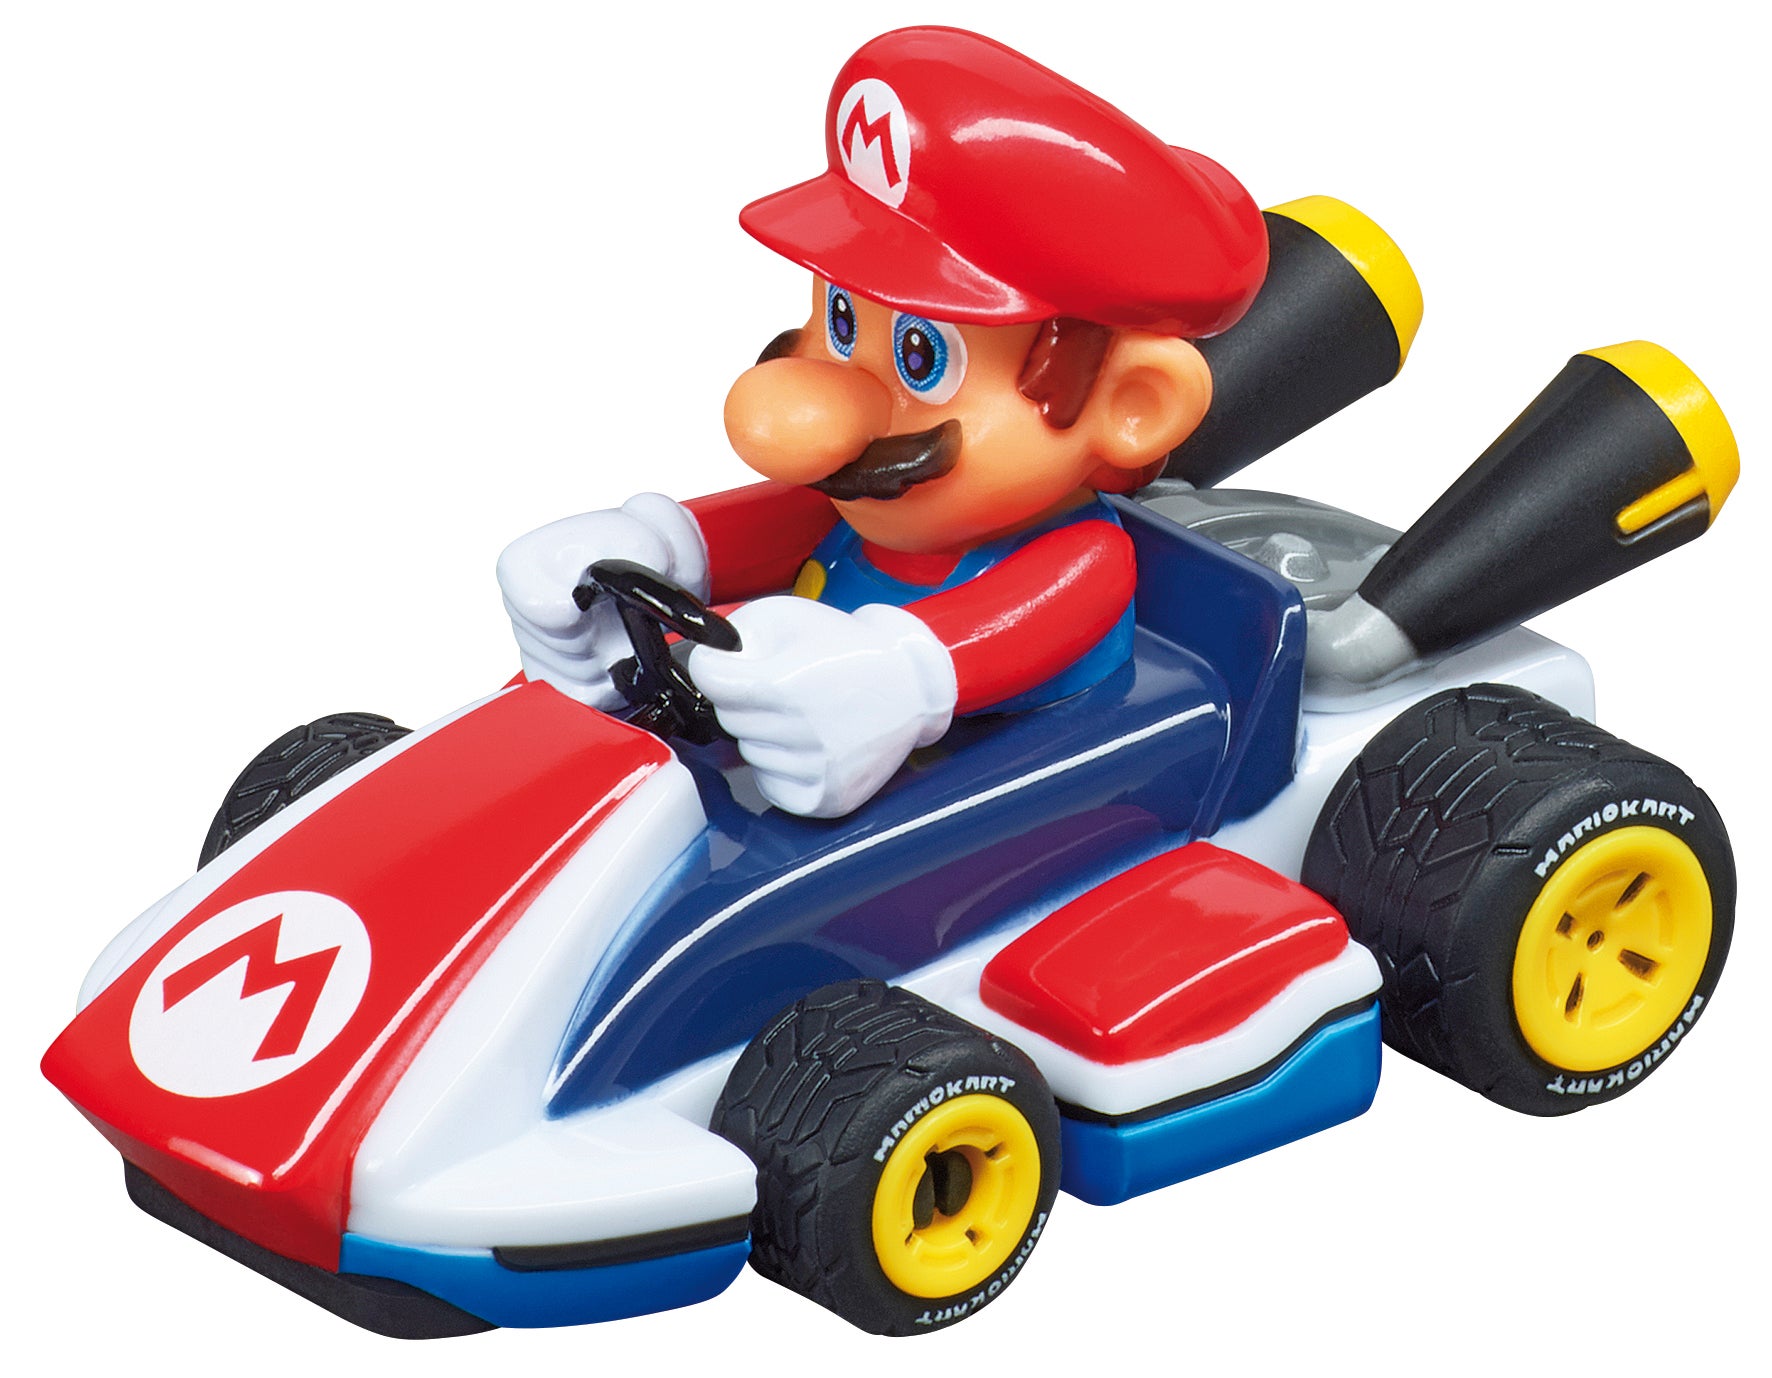 Immagine di Ecco la linea di giochi Carrera Toys dedicata a Mario Kart!